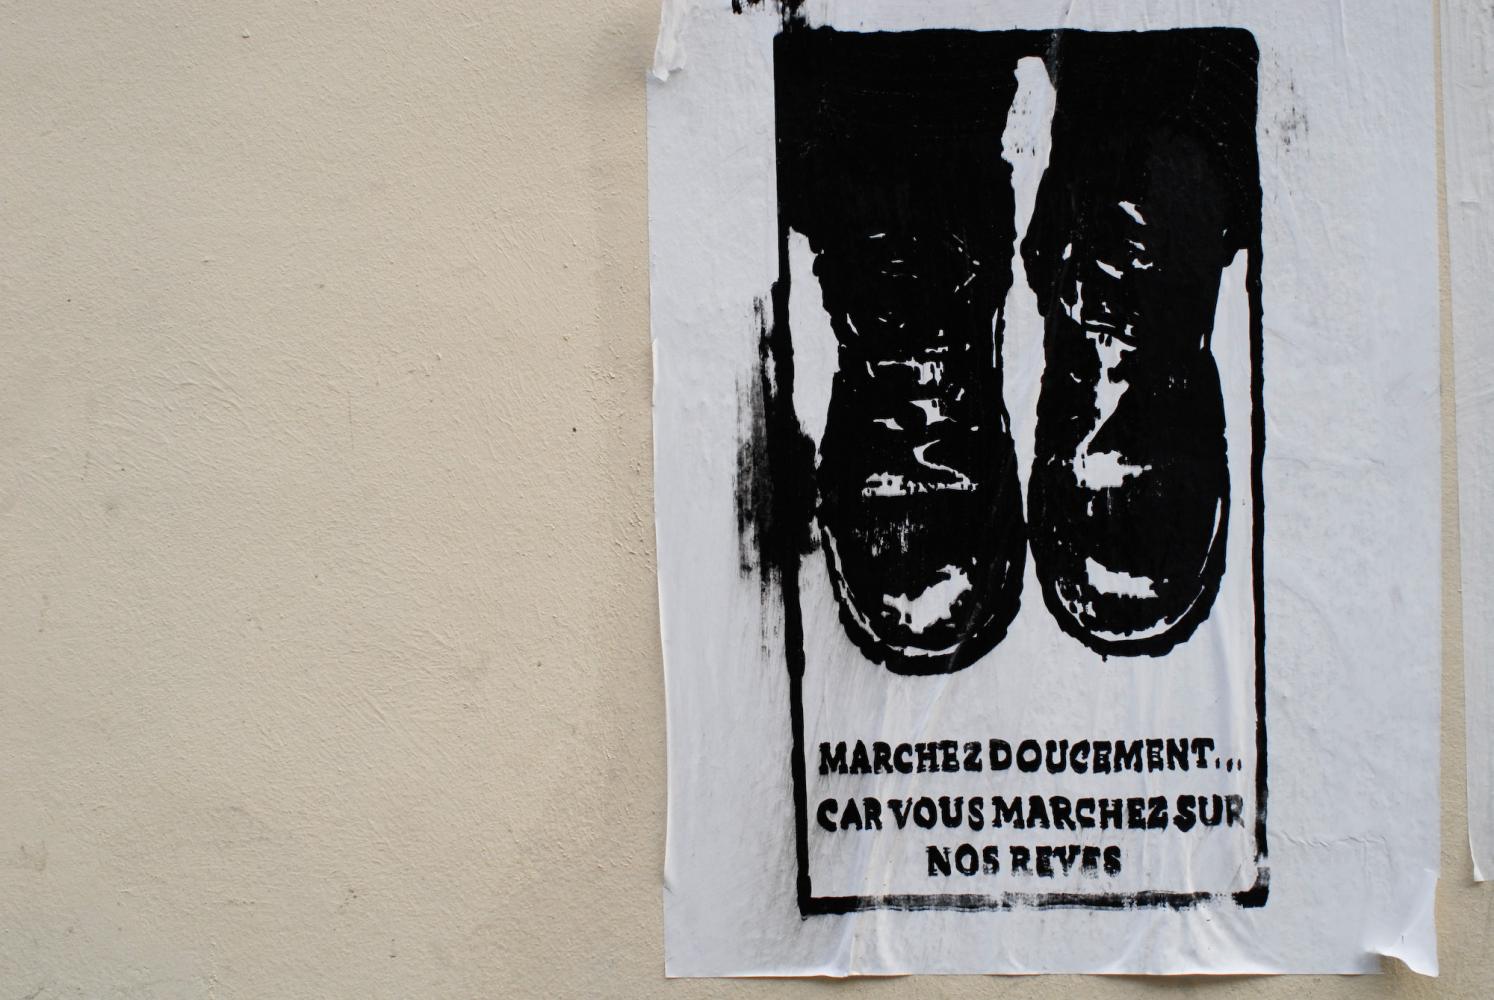 Graffiti au pochoir réalisé sur une affiche blanche, représentant des pieds chaussés de godillots au-dessus de quelques lignes. Paris, avril 2009.